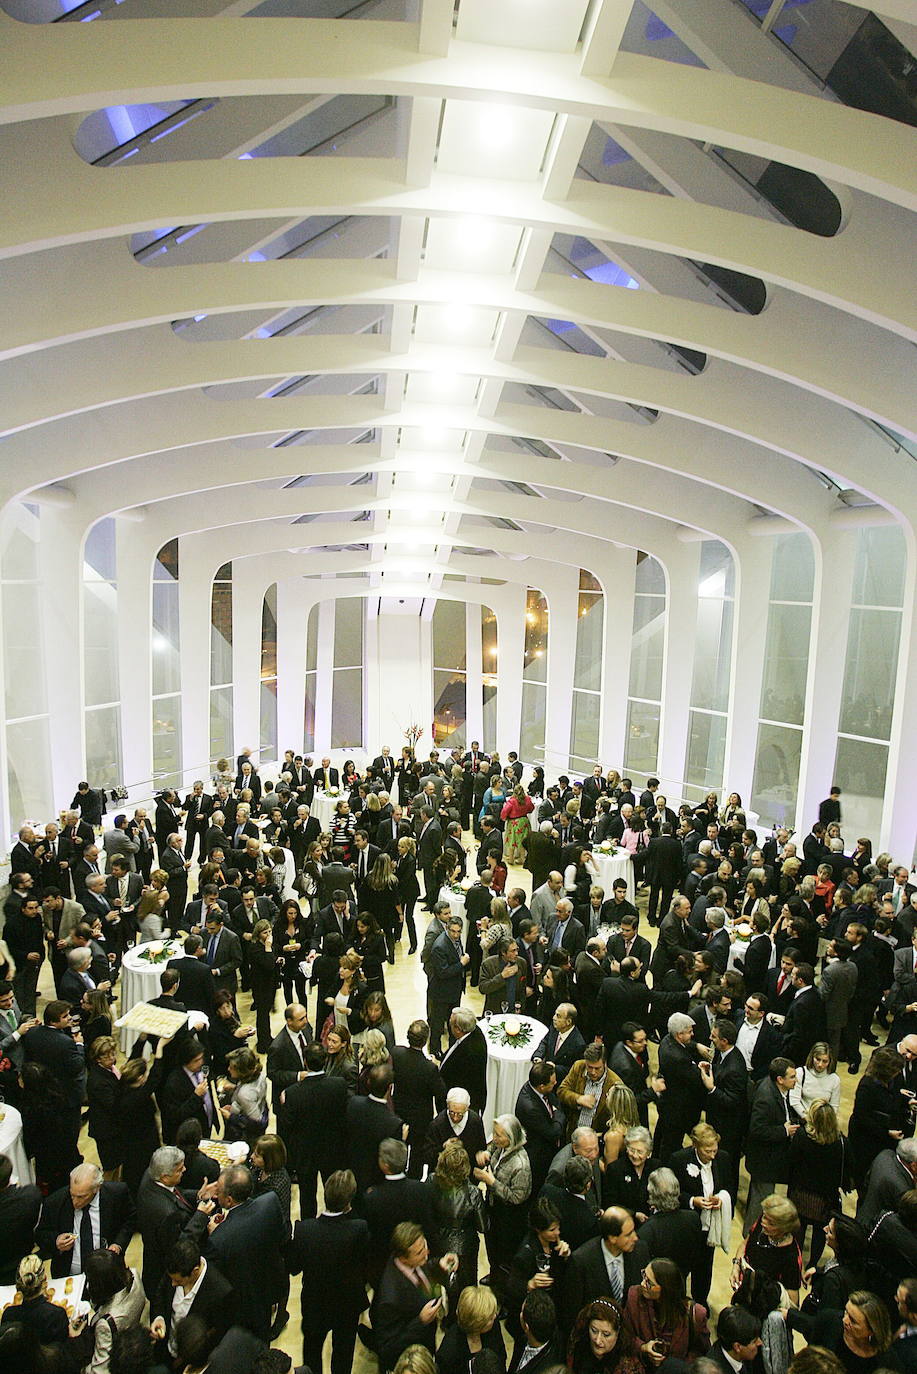 2009. Evento celebrado en la Ciudad de las Artes y de las Ciencias